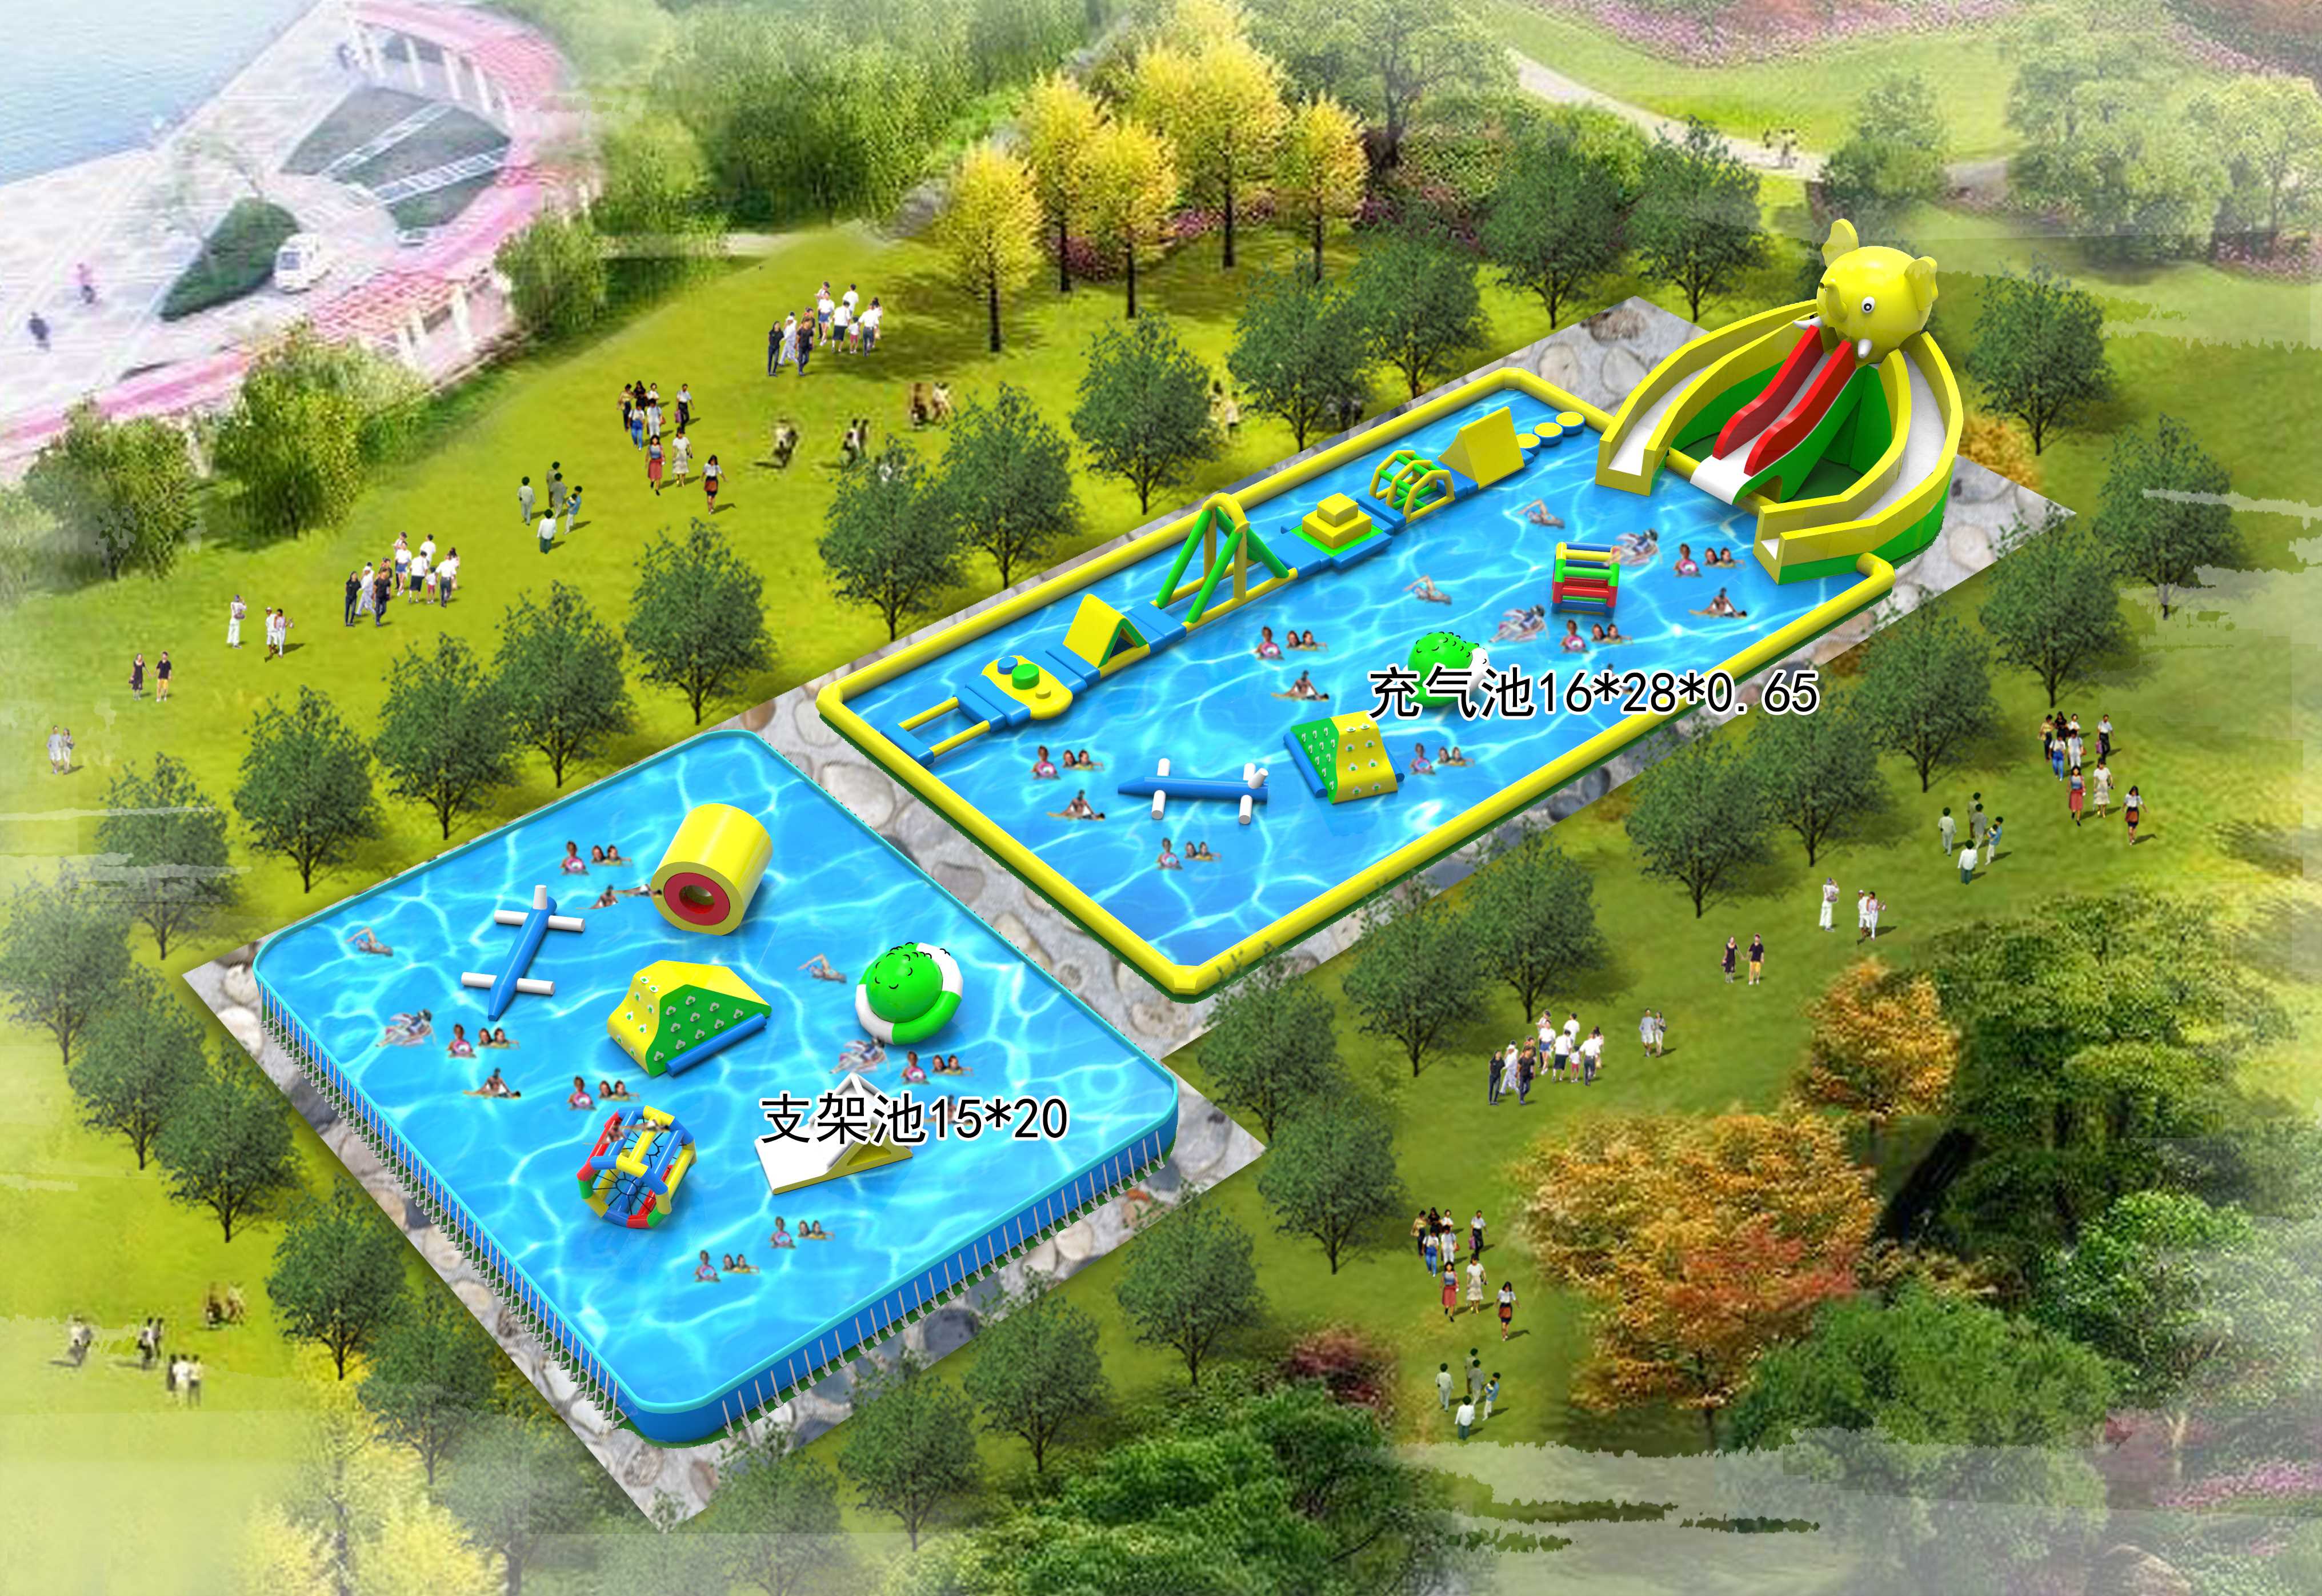 水上游乐园小型儿童水上乐园儿童乐园设施室内戏水小品亲子乐园-阿里巴巴